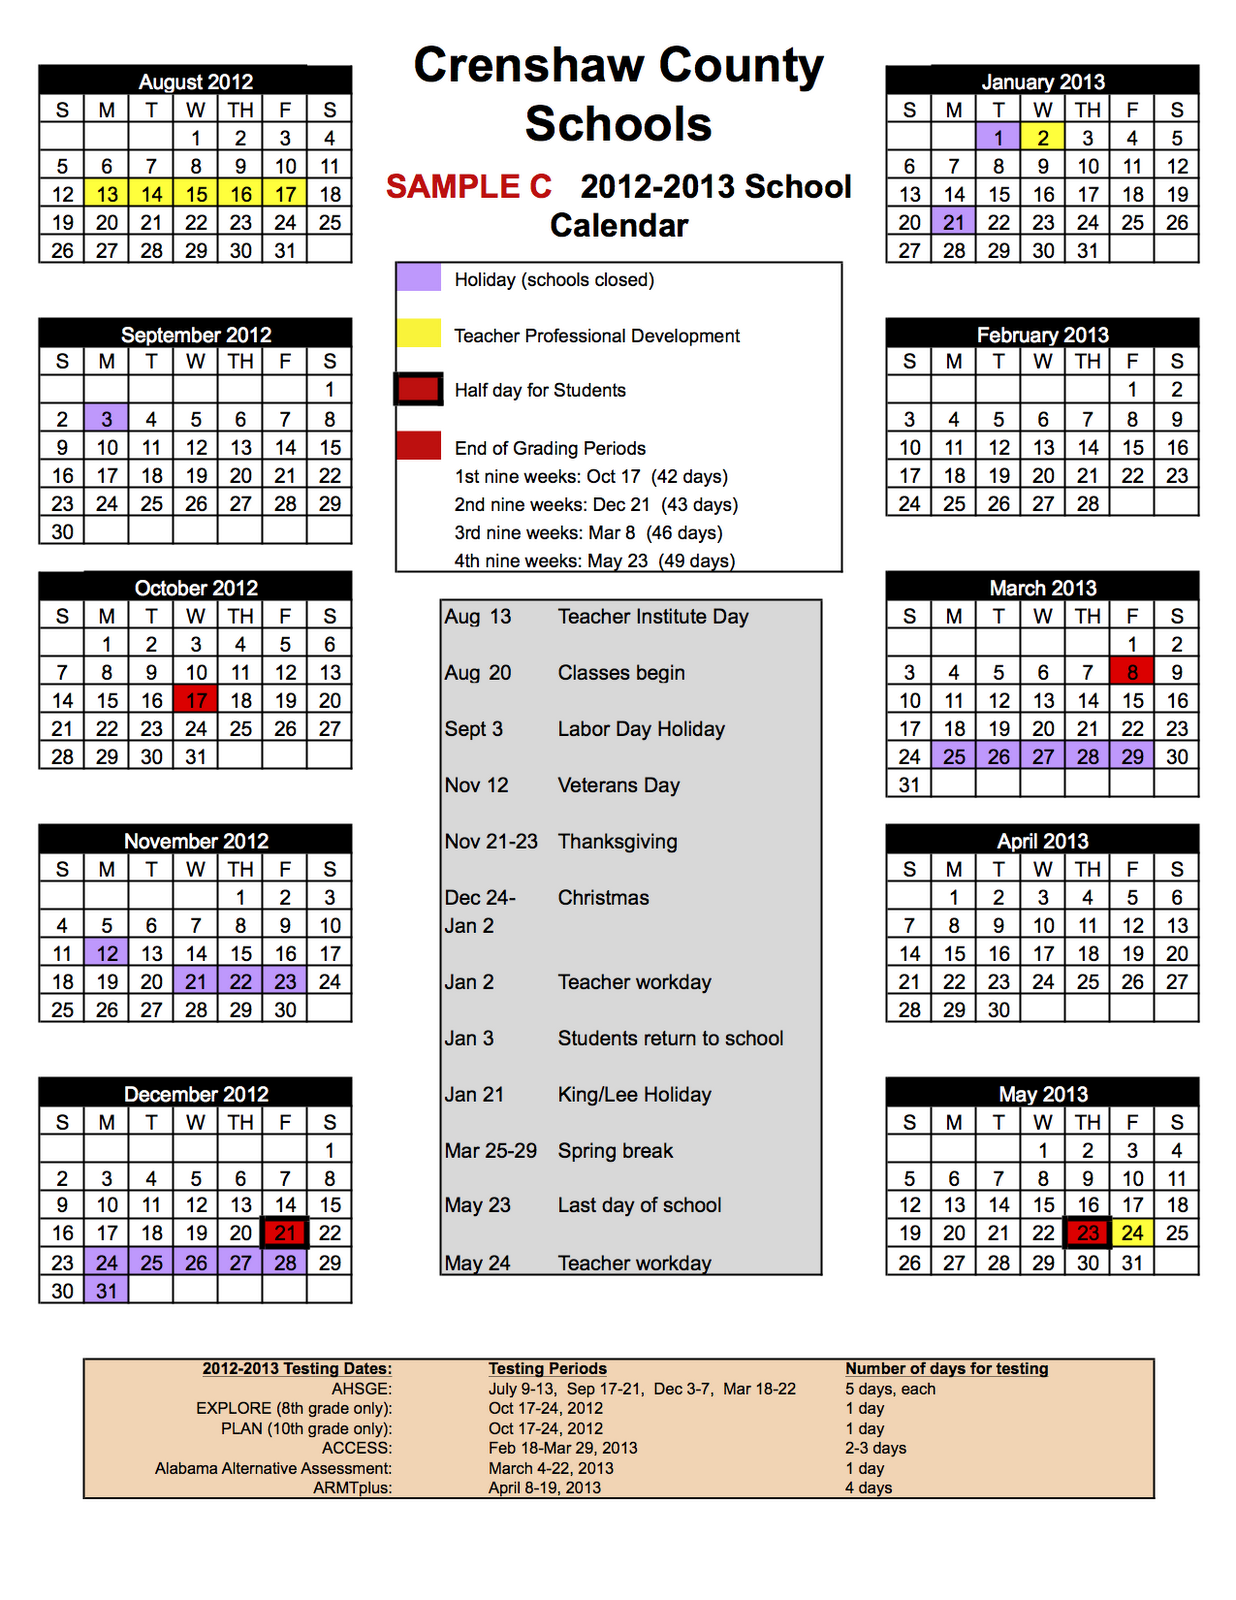 superintendent-s-corner-new-school-calendar